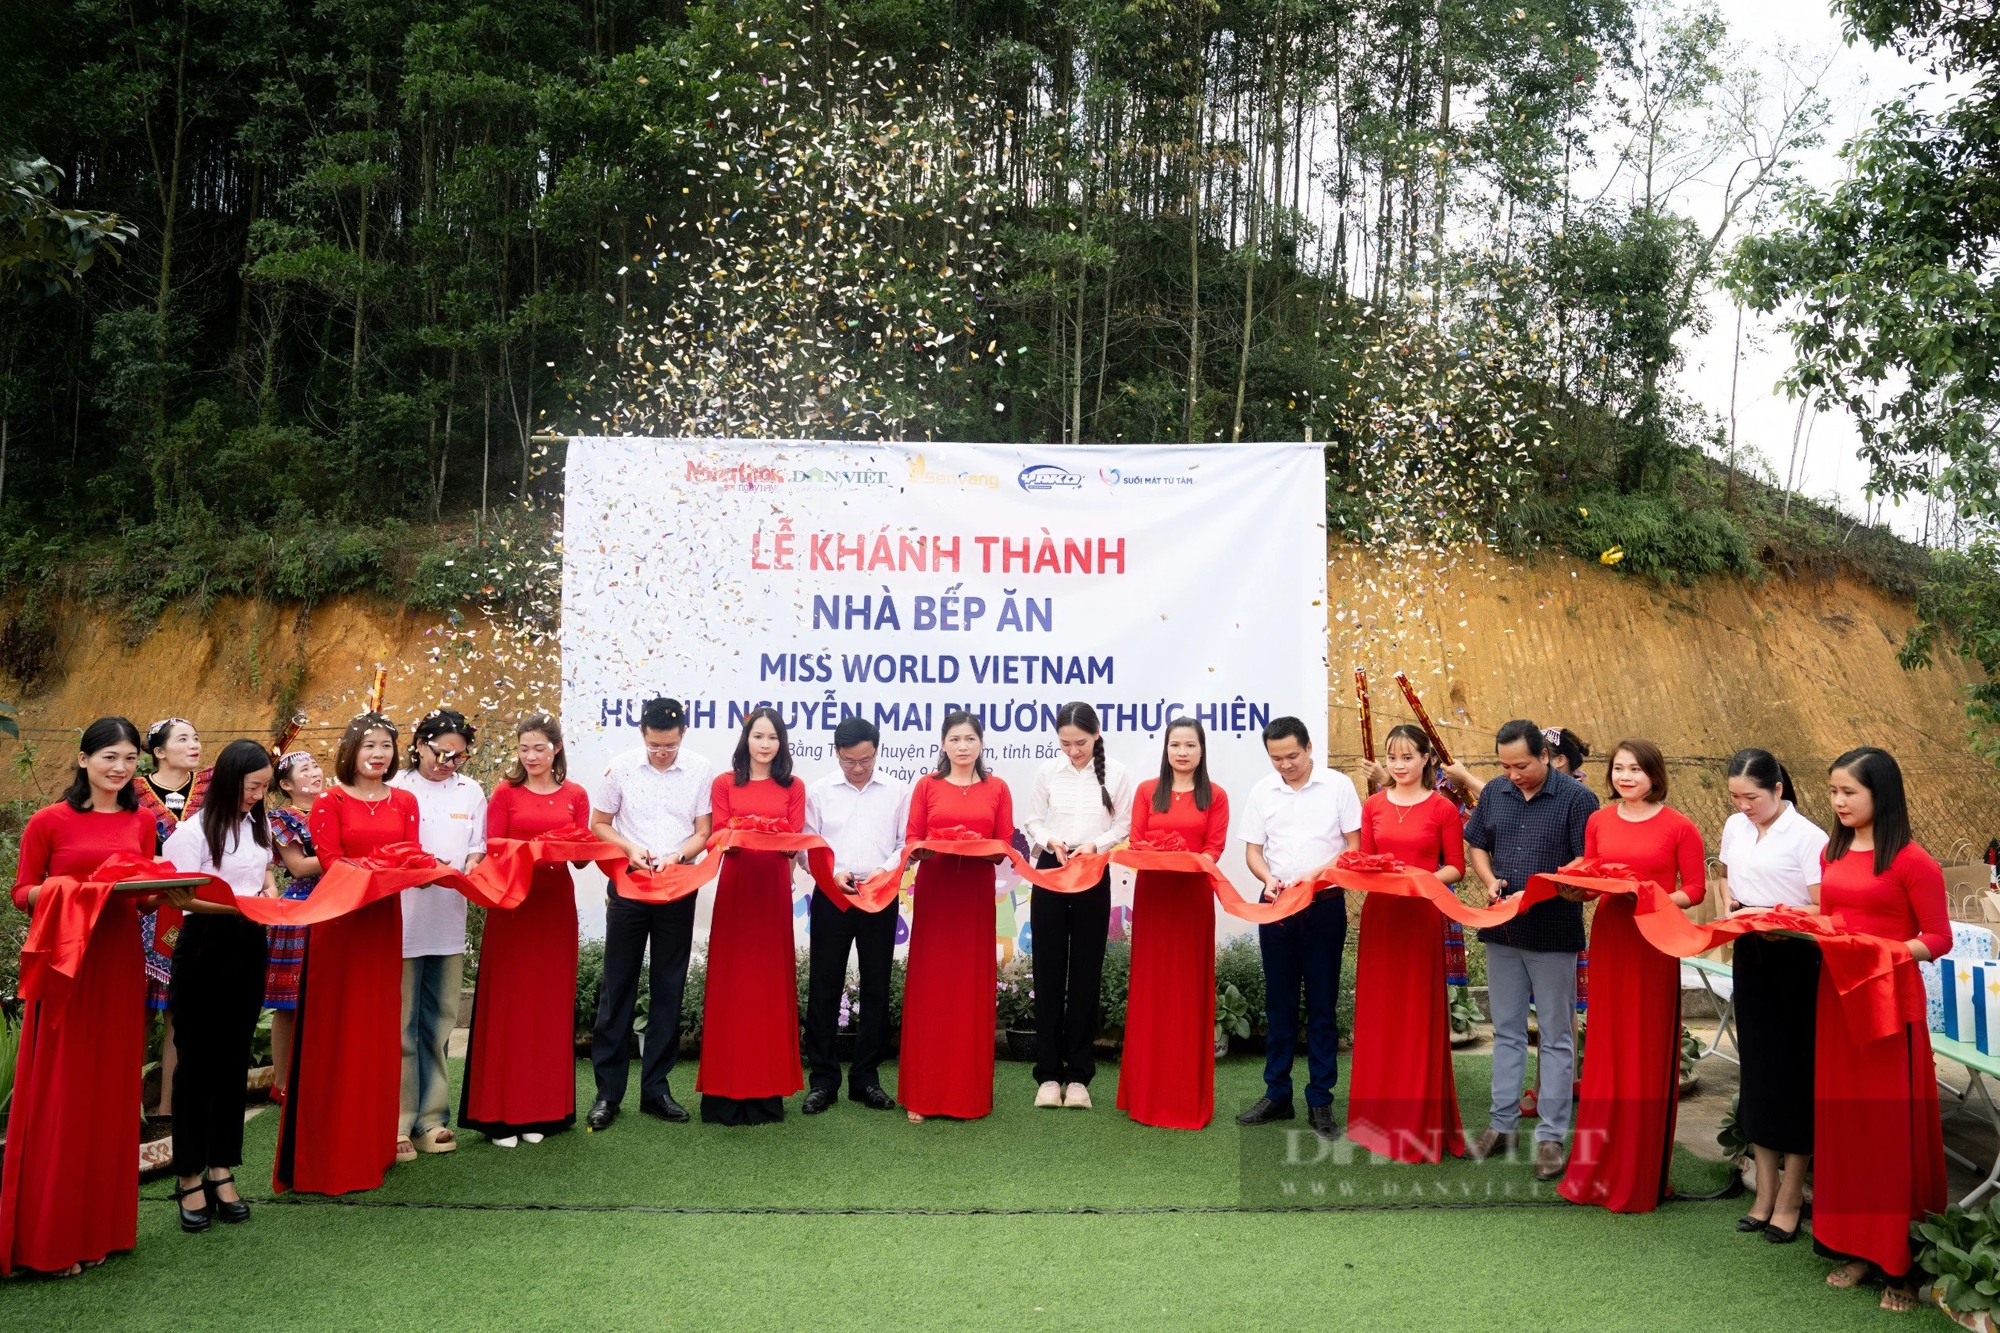 Bí thư Tỉnh ủy Bắc Kạn Hoàng Duy Chinh: Báo NTNN/Dân Việt luôn đồng hành cùng sự phát triển của tỉnh- Ảnh 4.